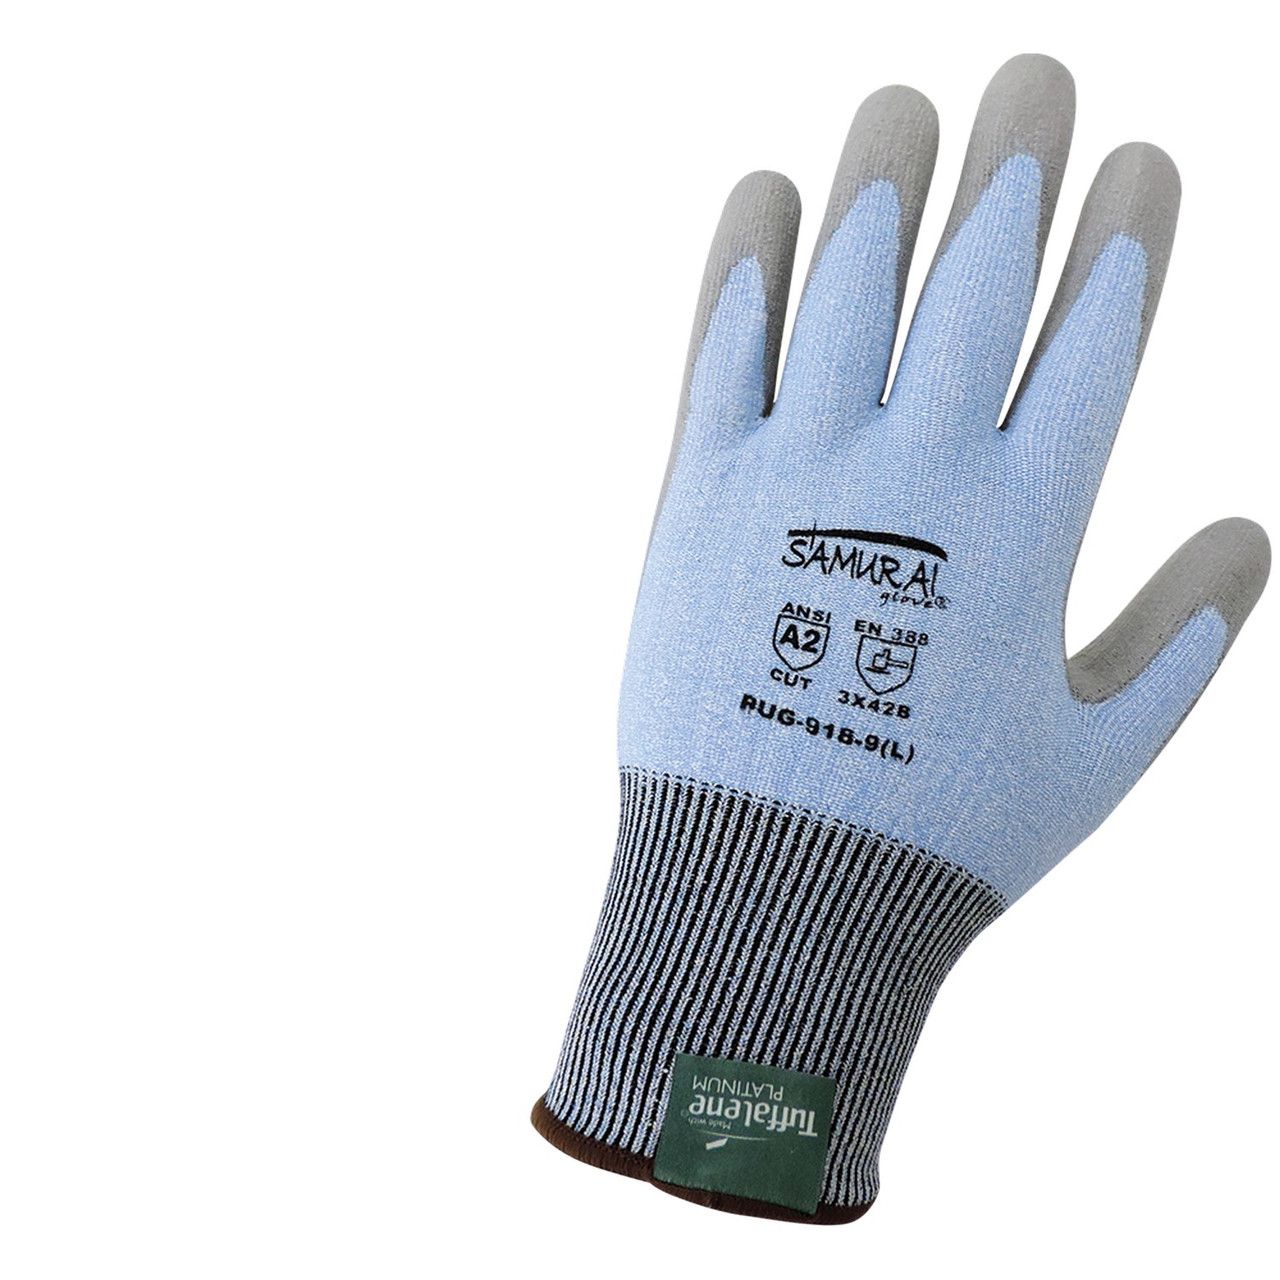 Samurai cut-resistant gloves